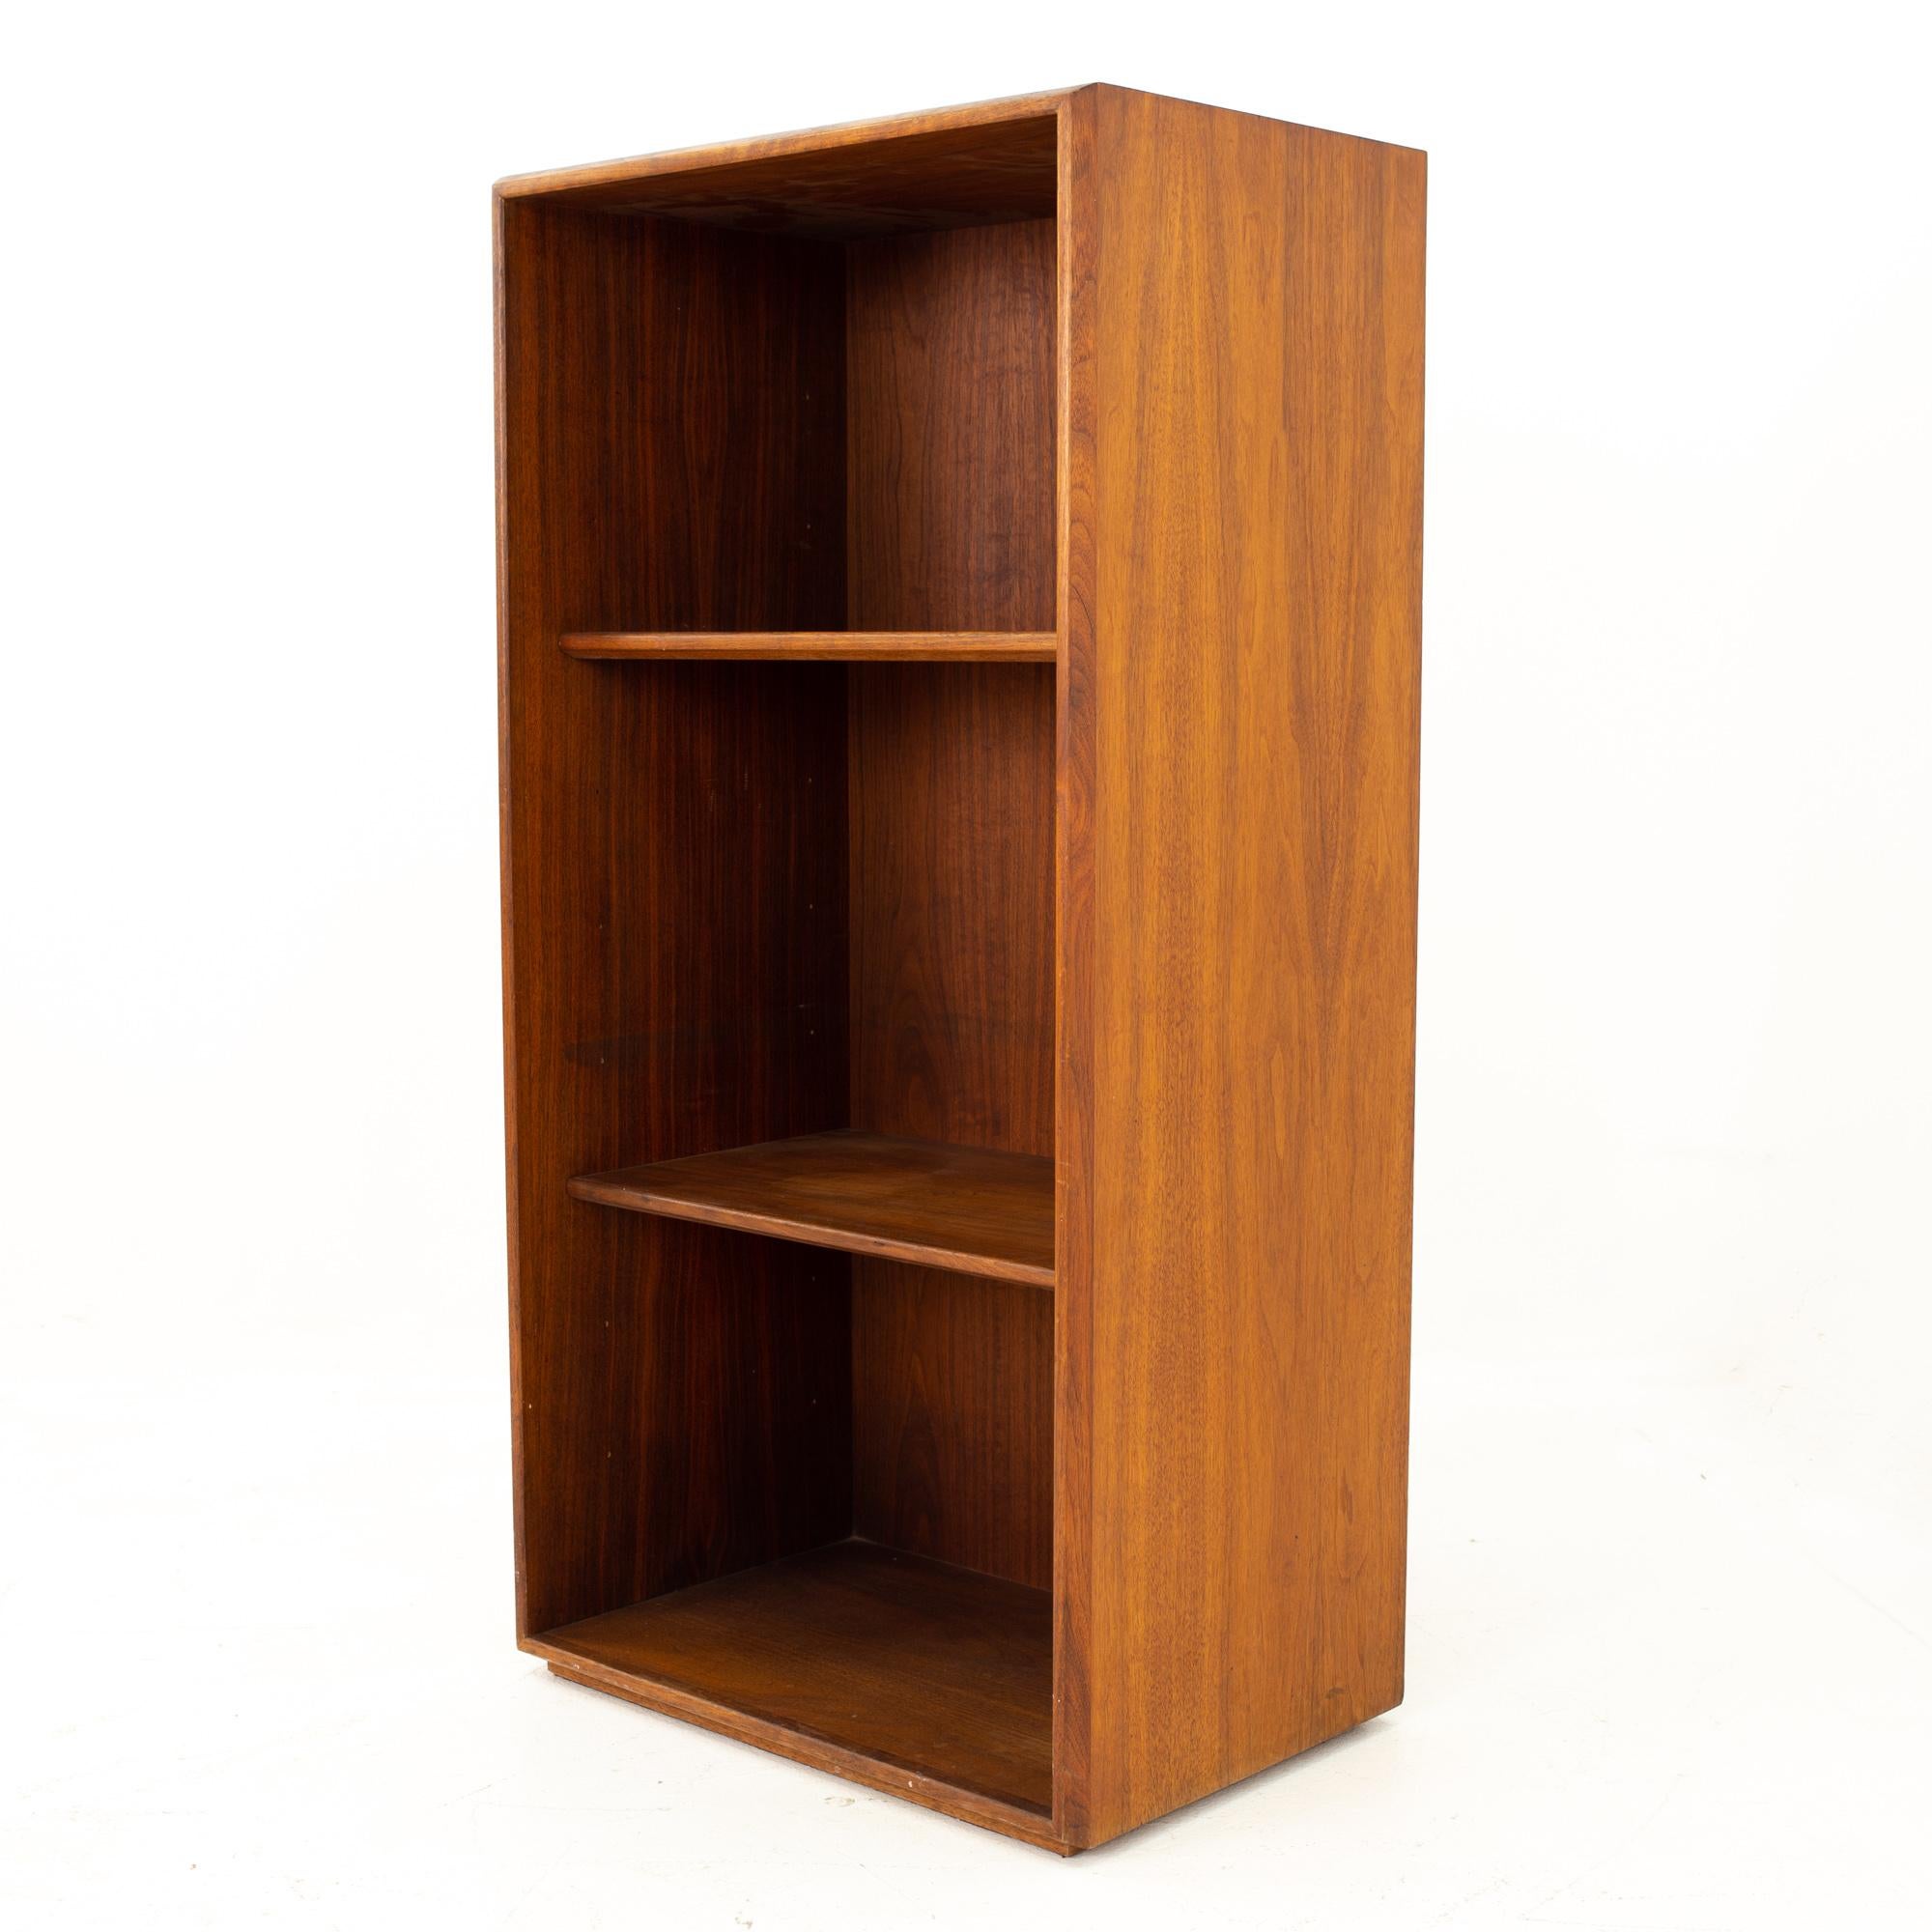 Jens Risom Nussbaum Bücherregal
Maße des Bücherregals: 22.5 breit x 15 tief x 44 hoch

Alle Möbelstücke sind in einem so genannten restaurierten Vintage-Zustand zu haben. Das bedeutet, dass das Stück beim Kauf restauriert wird, so dass es frei